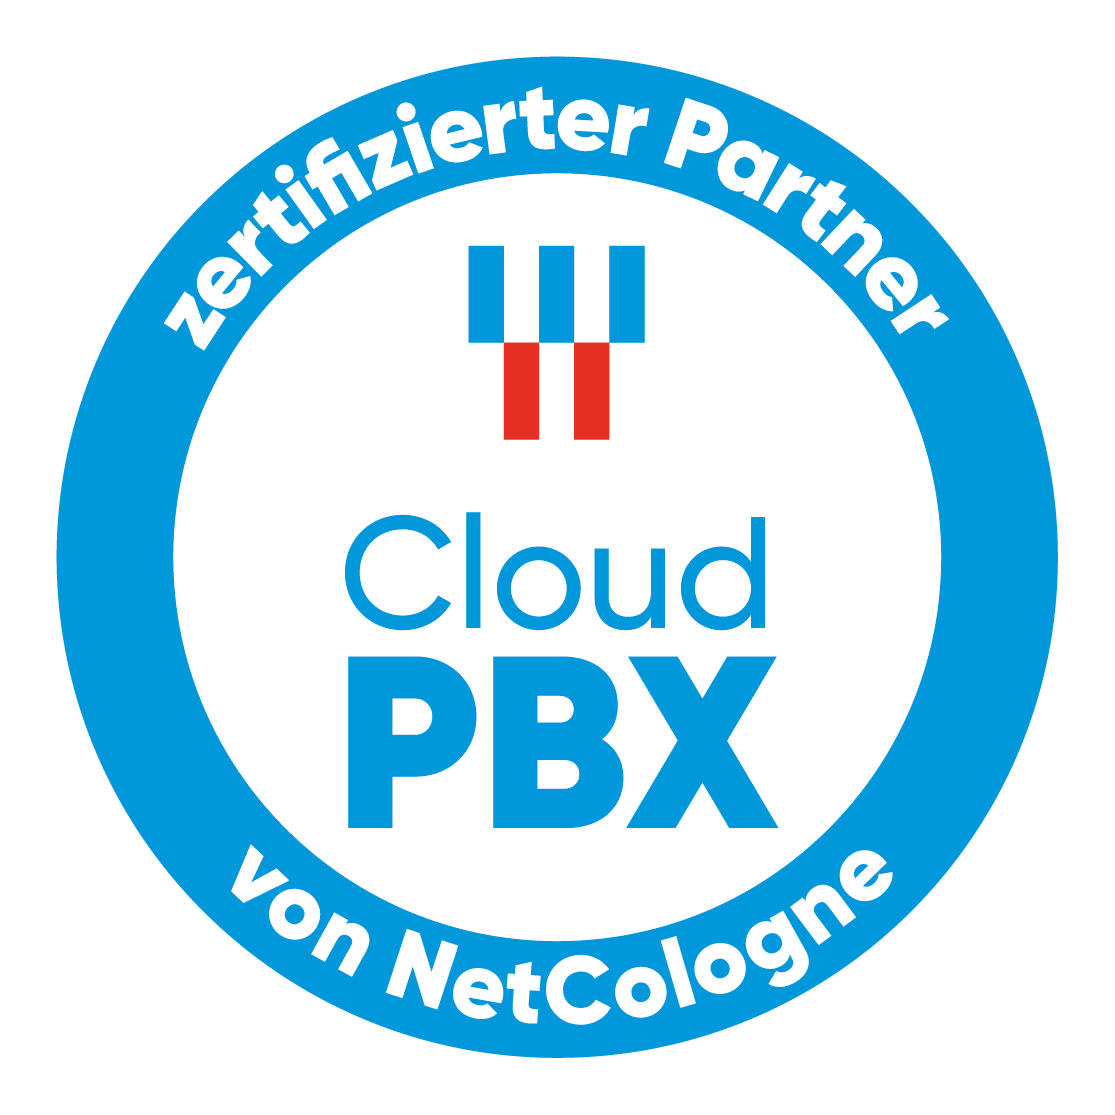 NetCologne Cloud PBX Zertifizierter Partner